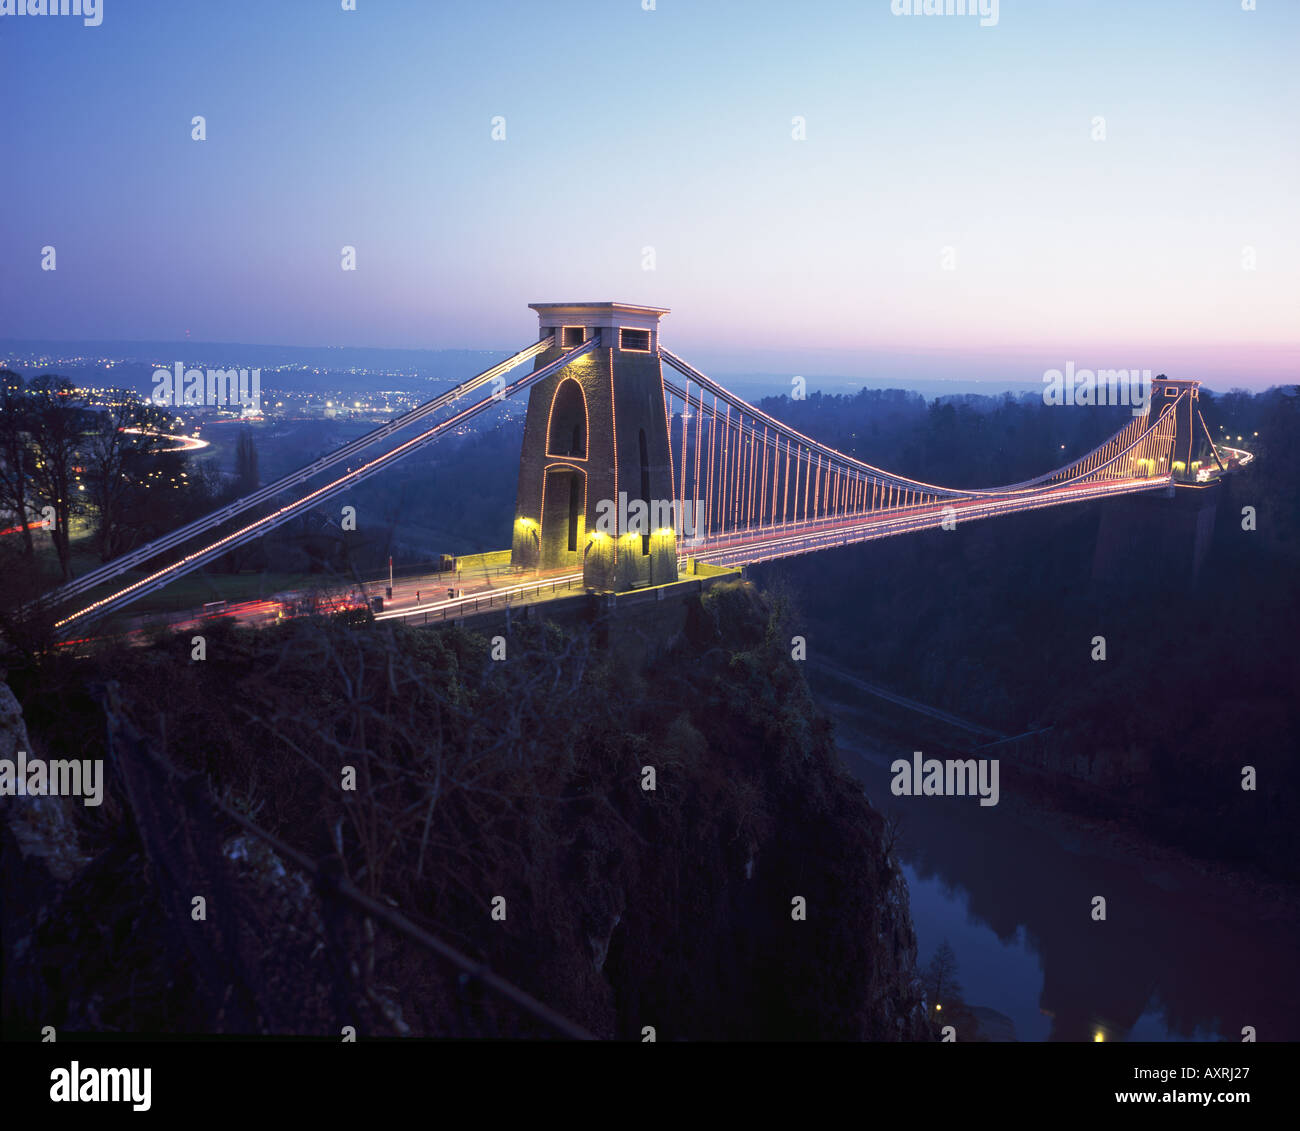 Abend Zeit, wenn die Lichter auf die spektakuläre Clifton Suspension Bridge über die Avon-Schlucht in Bristol kommen. Stockfoto